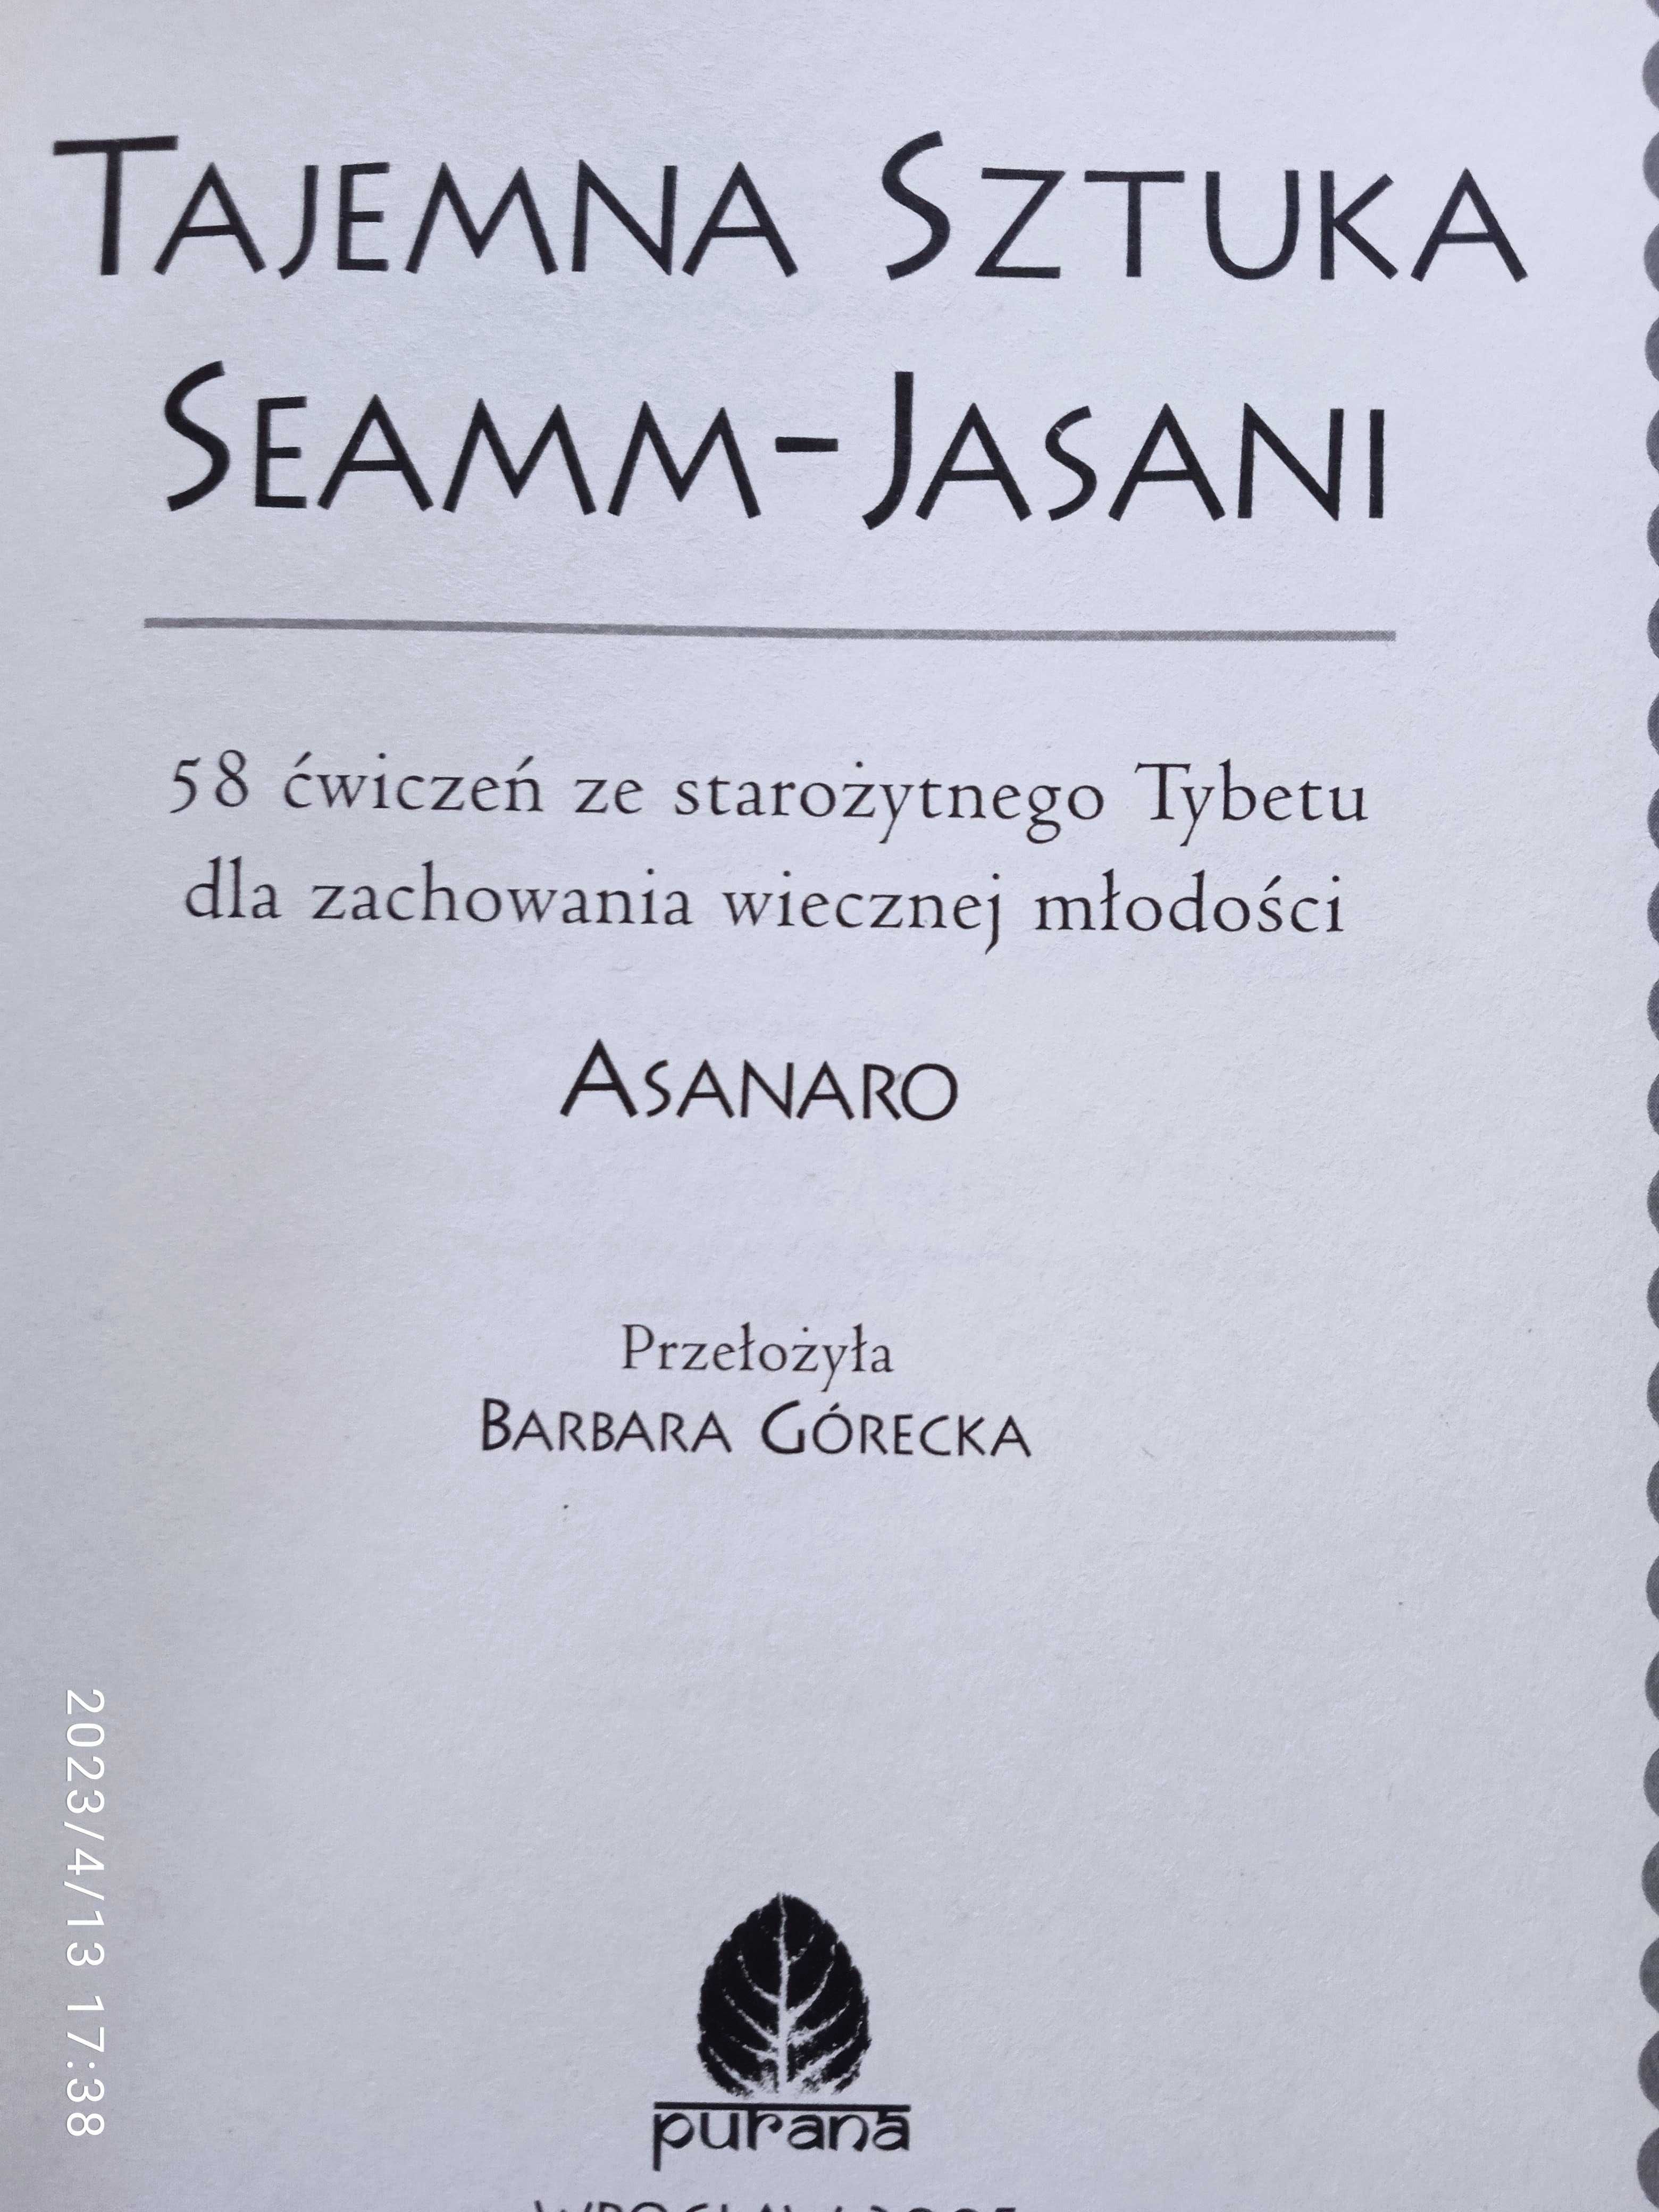 Tajemna sztuka Seamm-Jasani -  Asanaro